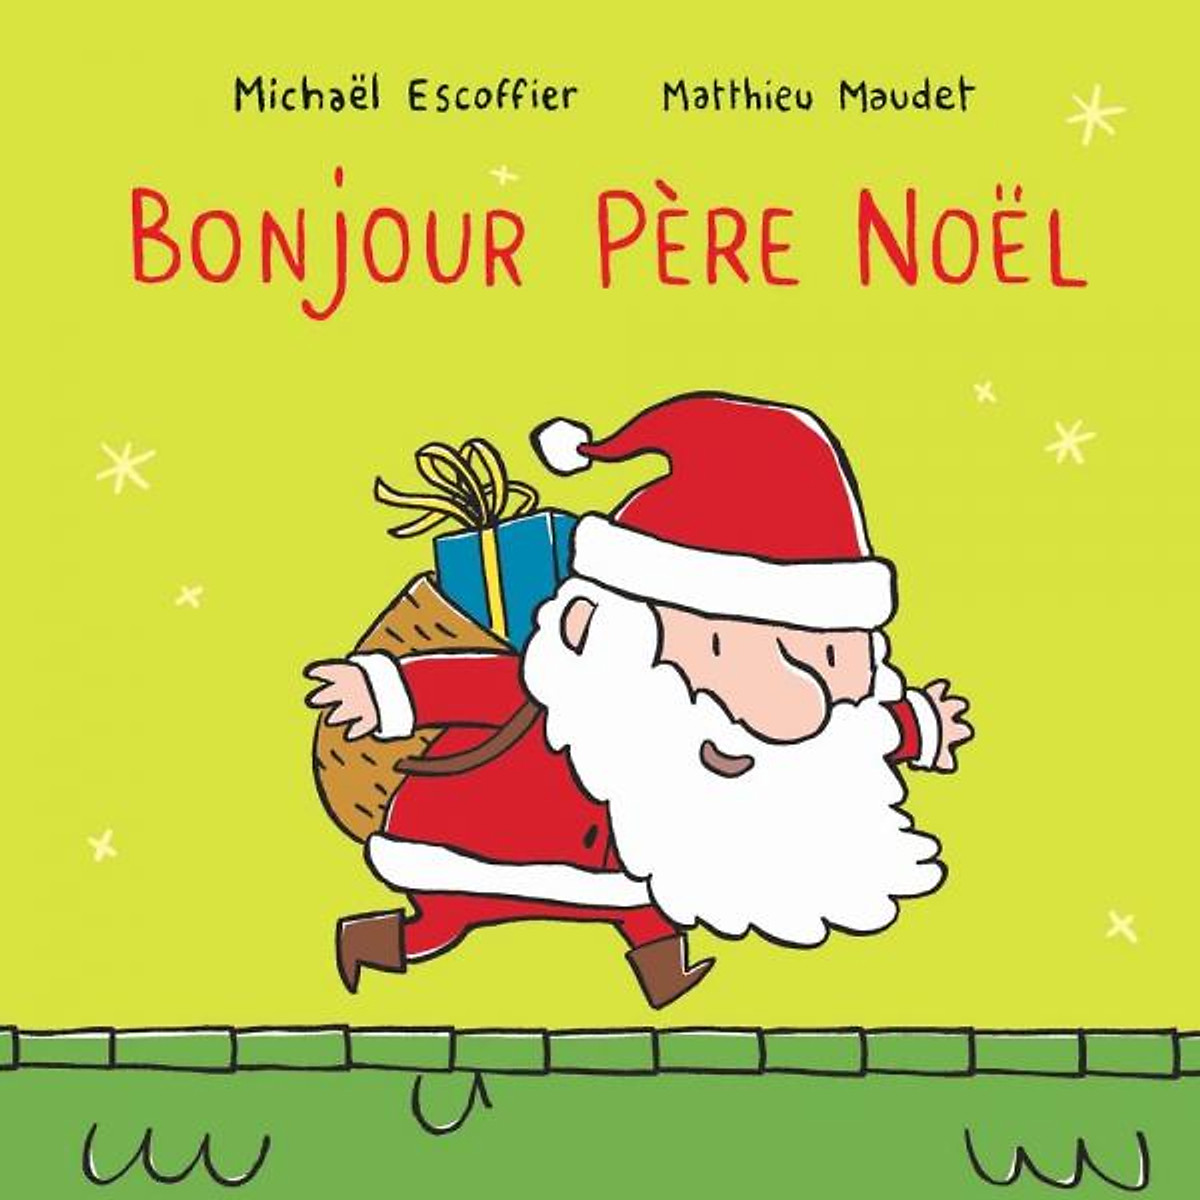 Truyện tranh thiếu nhi Pháp: Bonjour Pere Noel